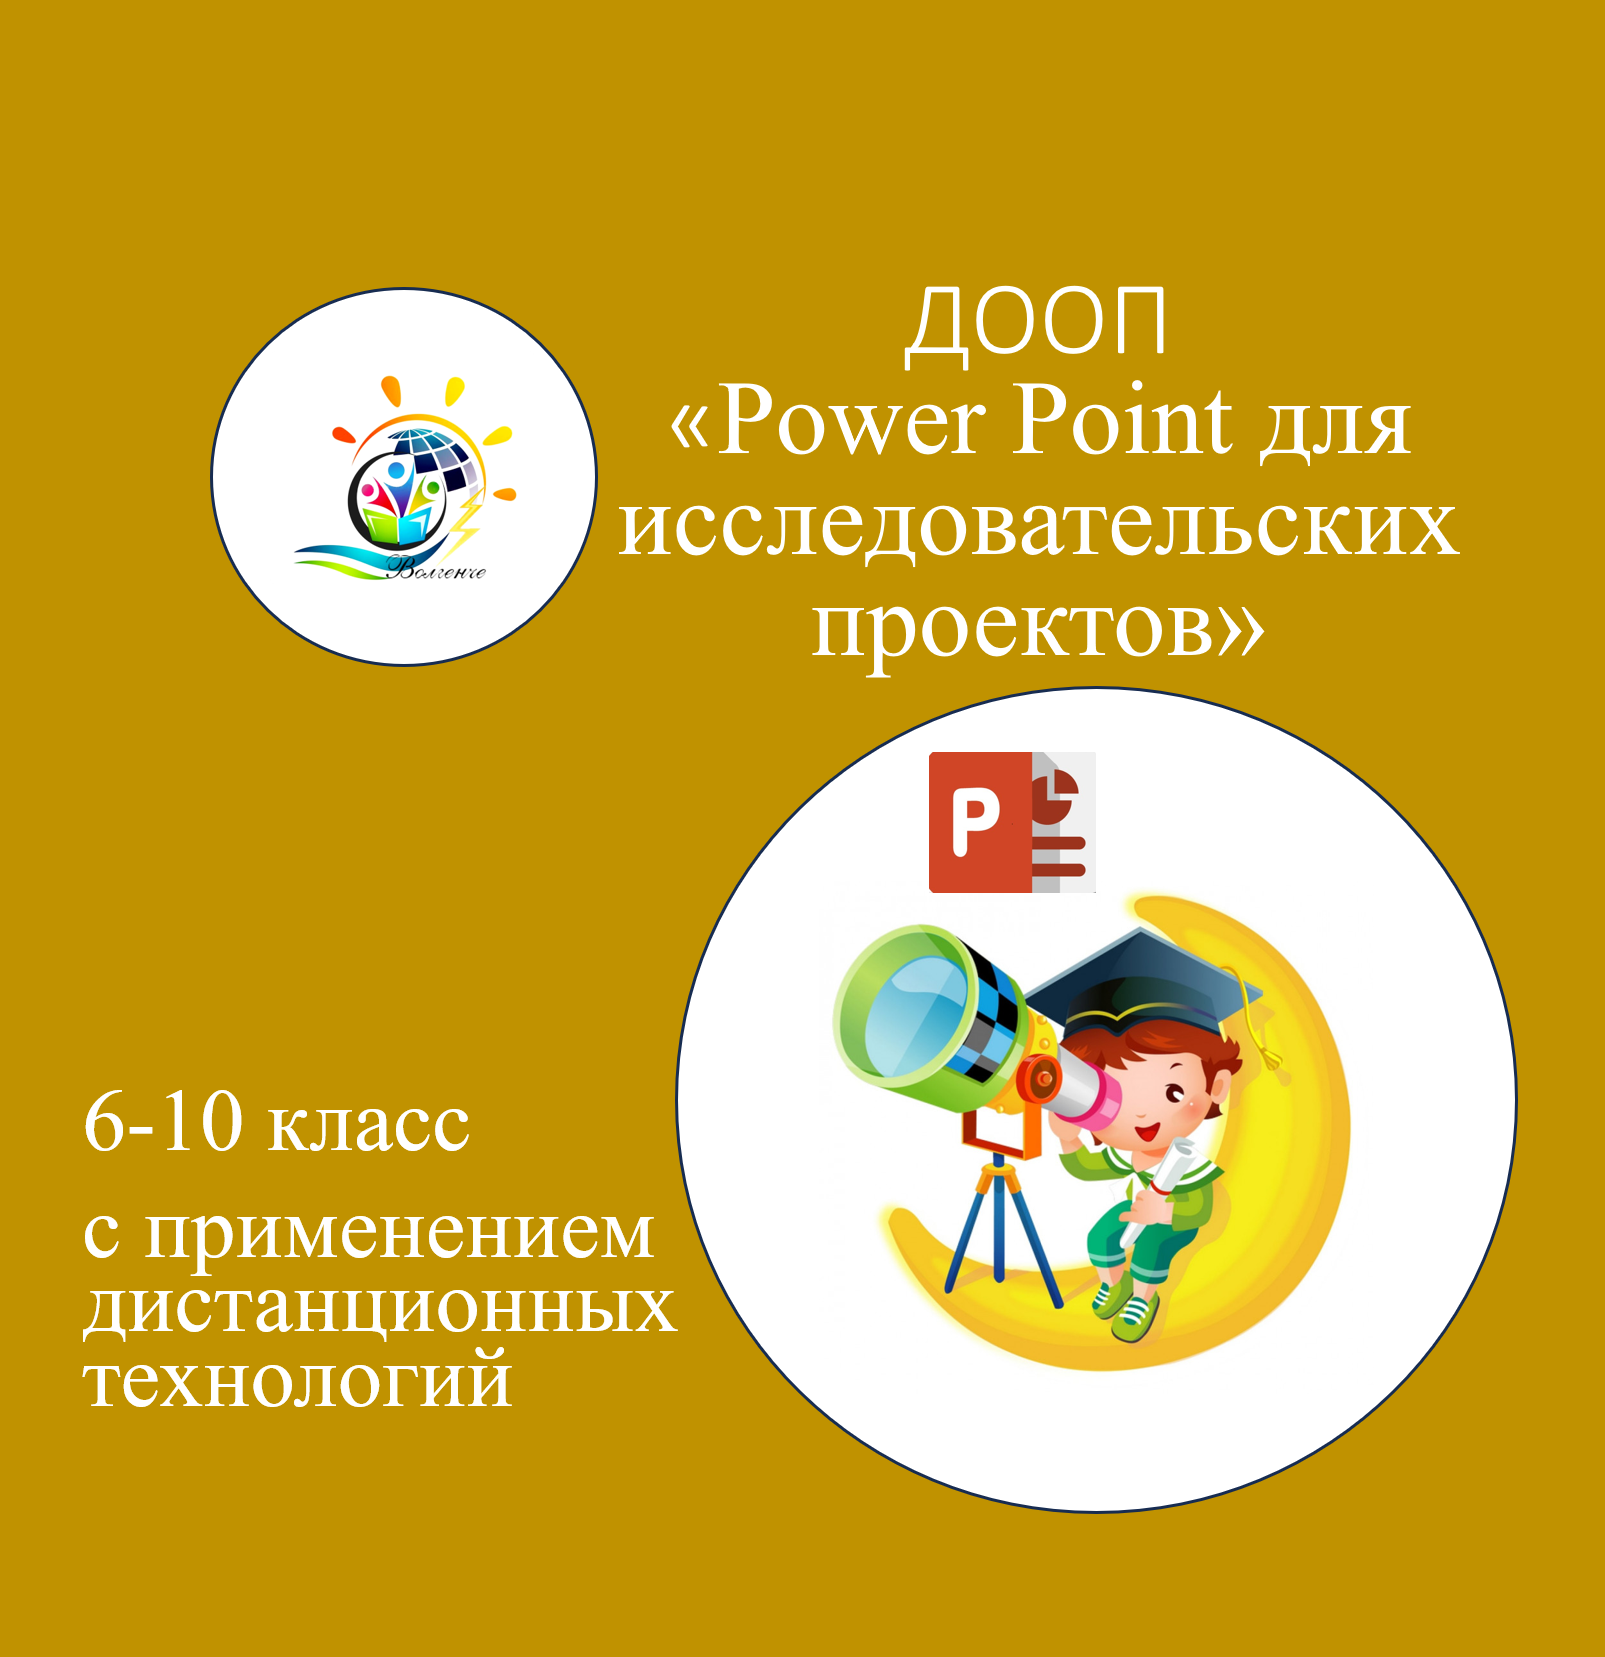 ДООП "Powerpoint для исследовательских проектов"